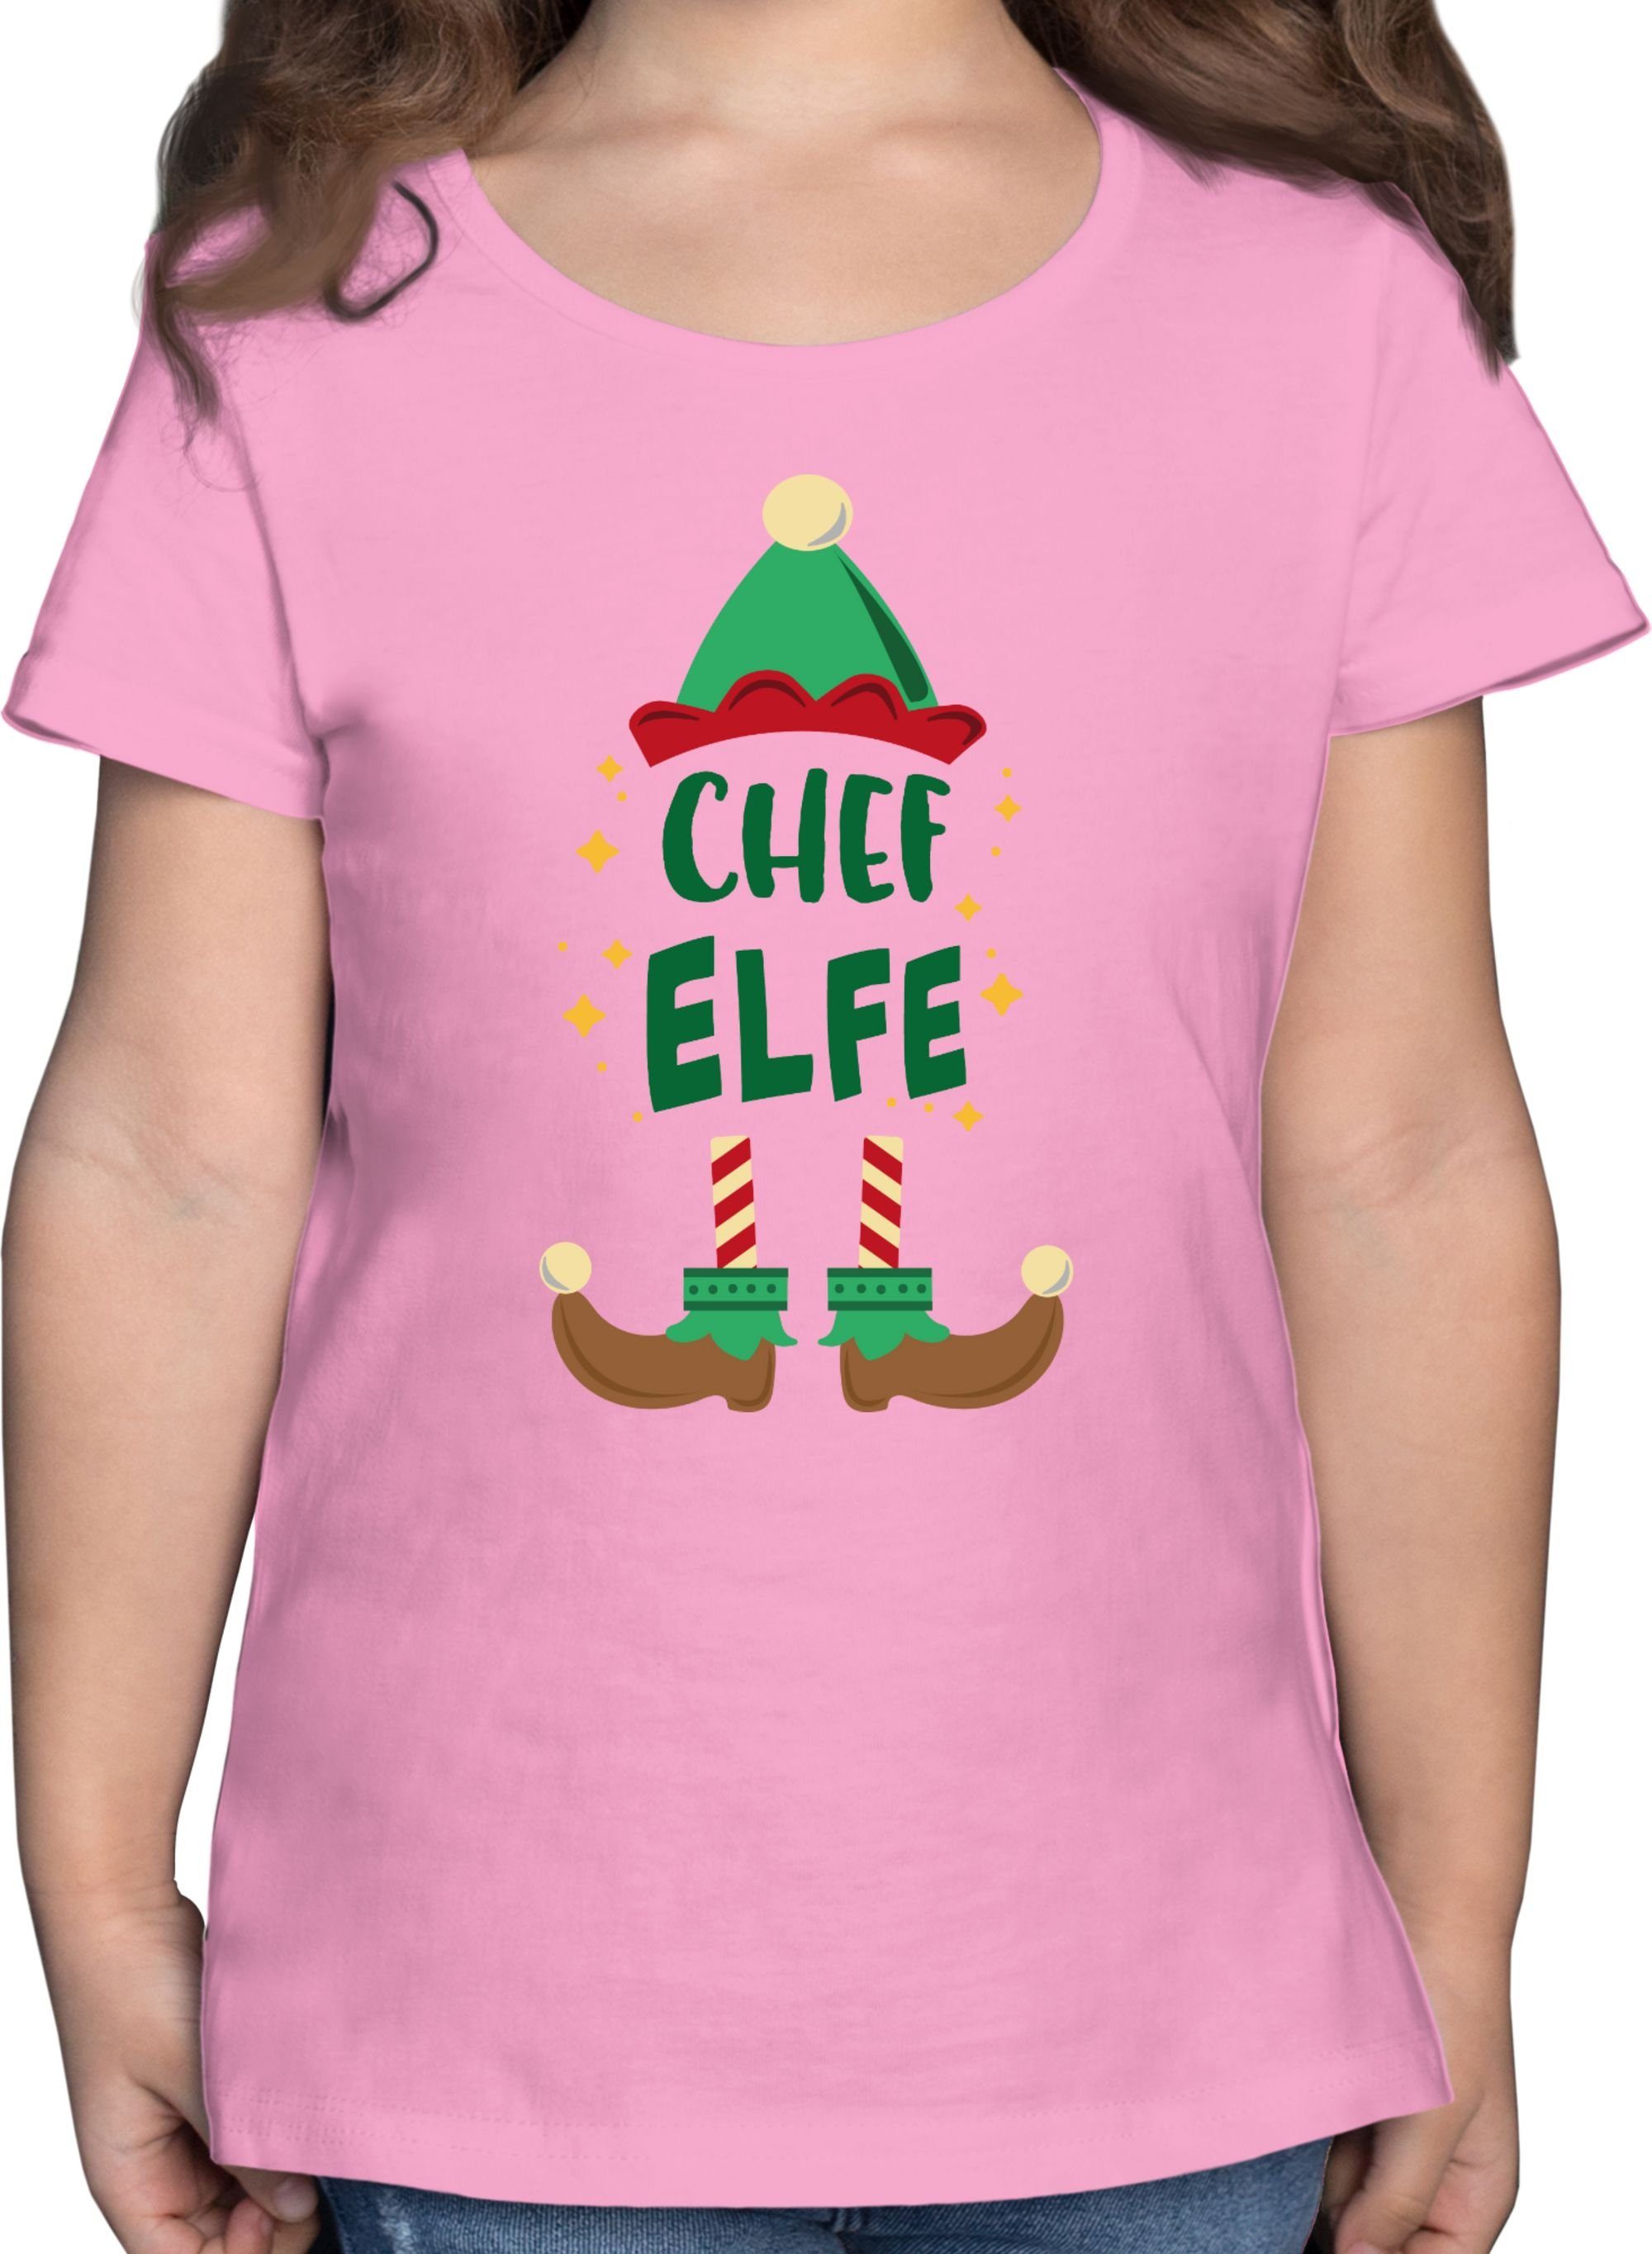 Kleidung Weihnachten Shirtracer Chef Rosa Elfe 1 Kinder Weihnachten T-Shirt